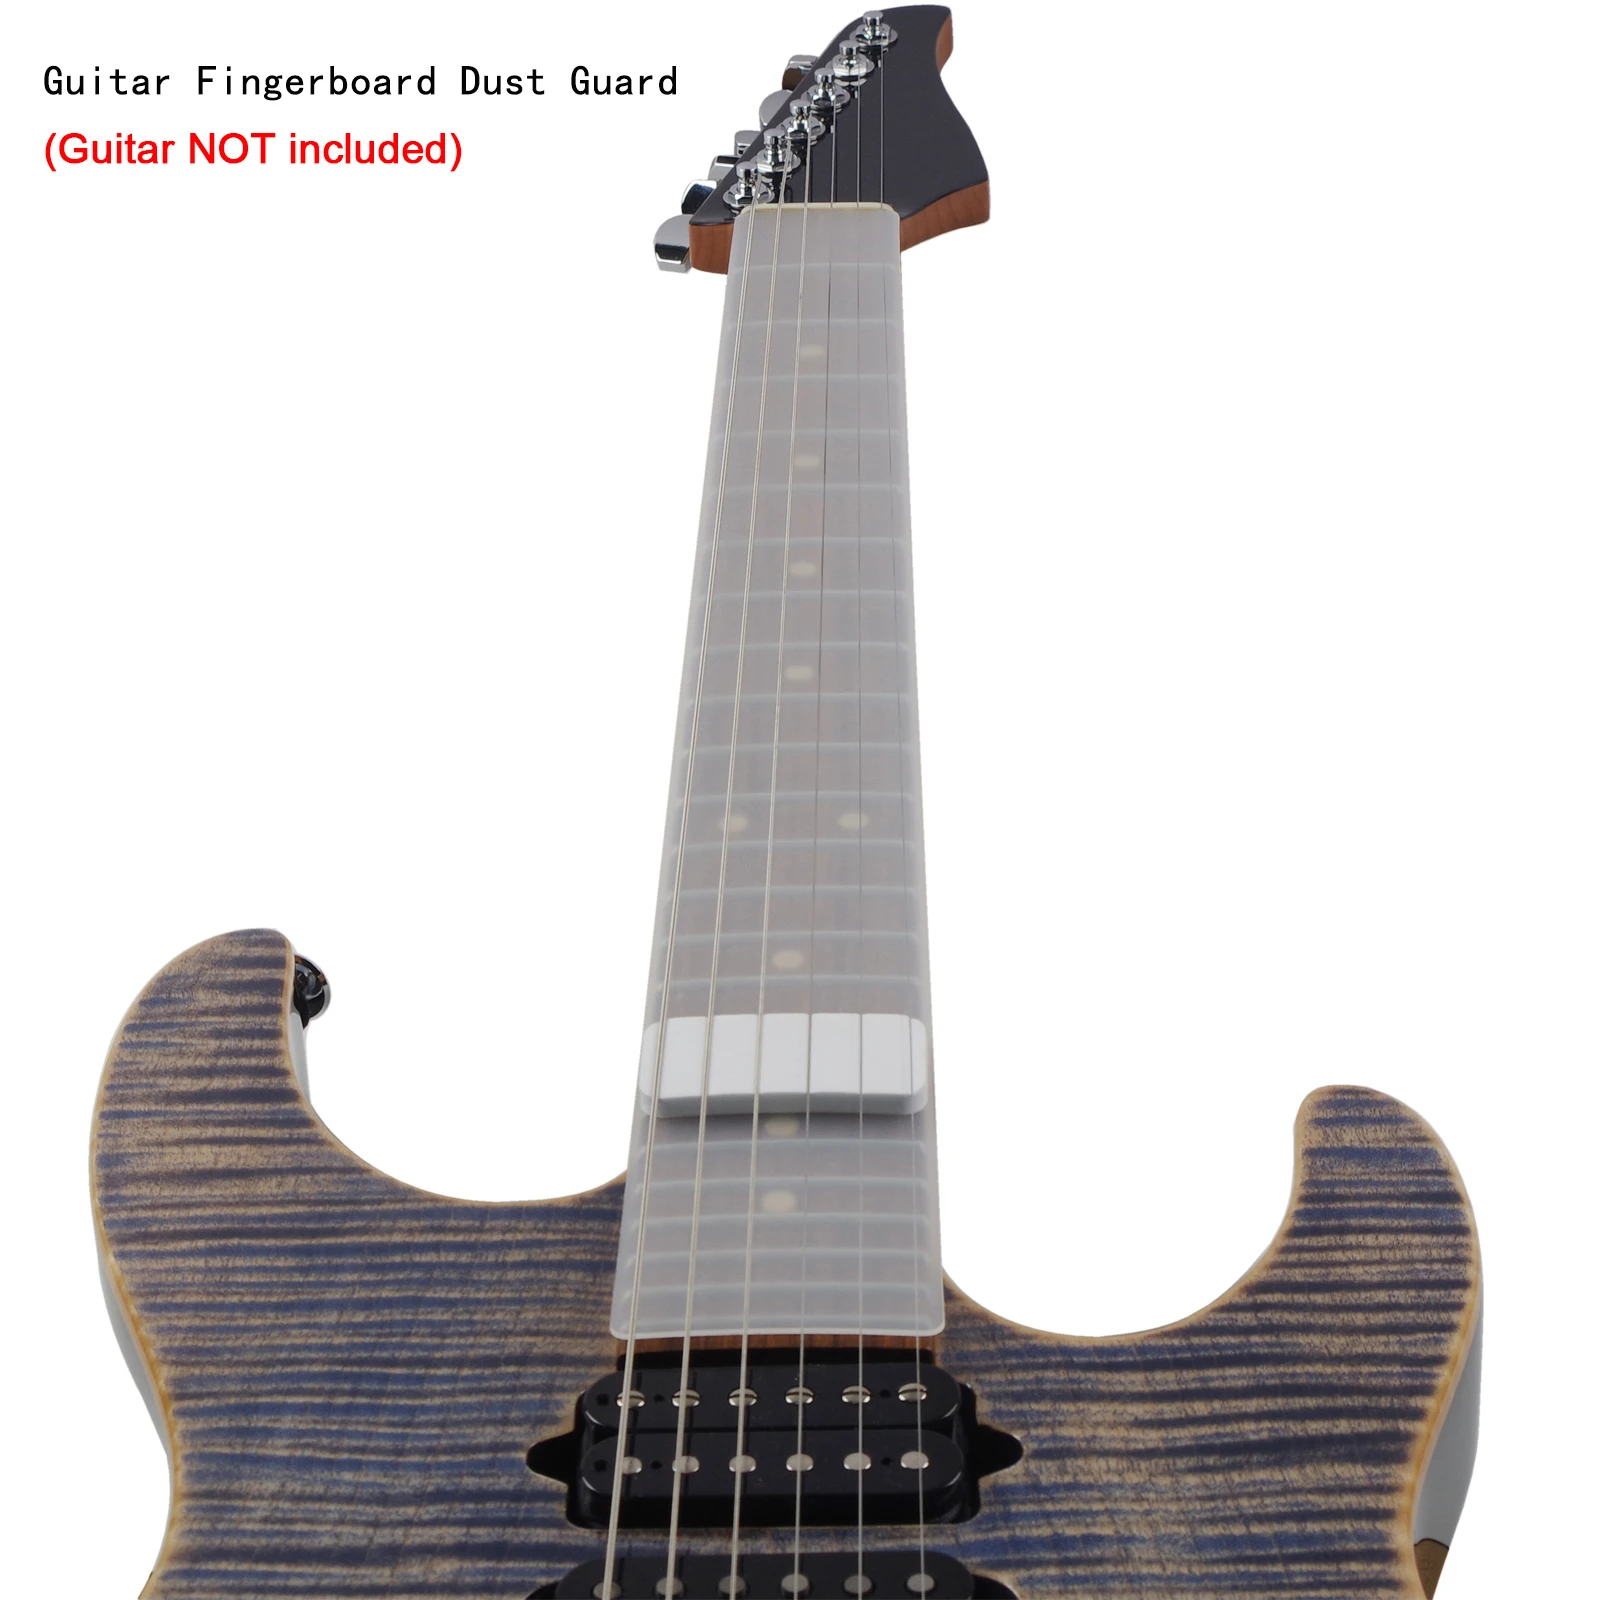 Nickel plaqué haute qualité pour cordes de guitare électrique pour modèle GE